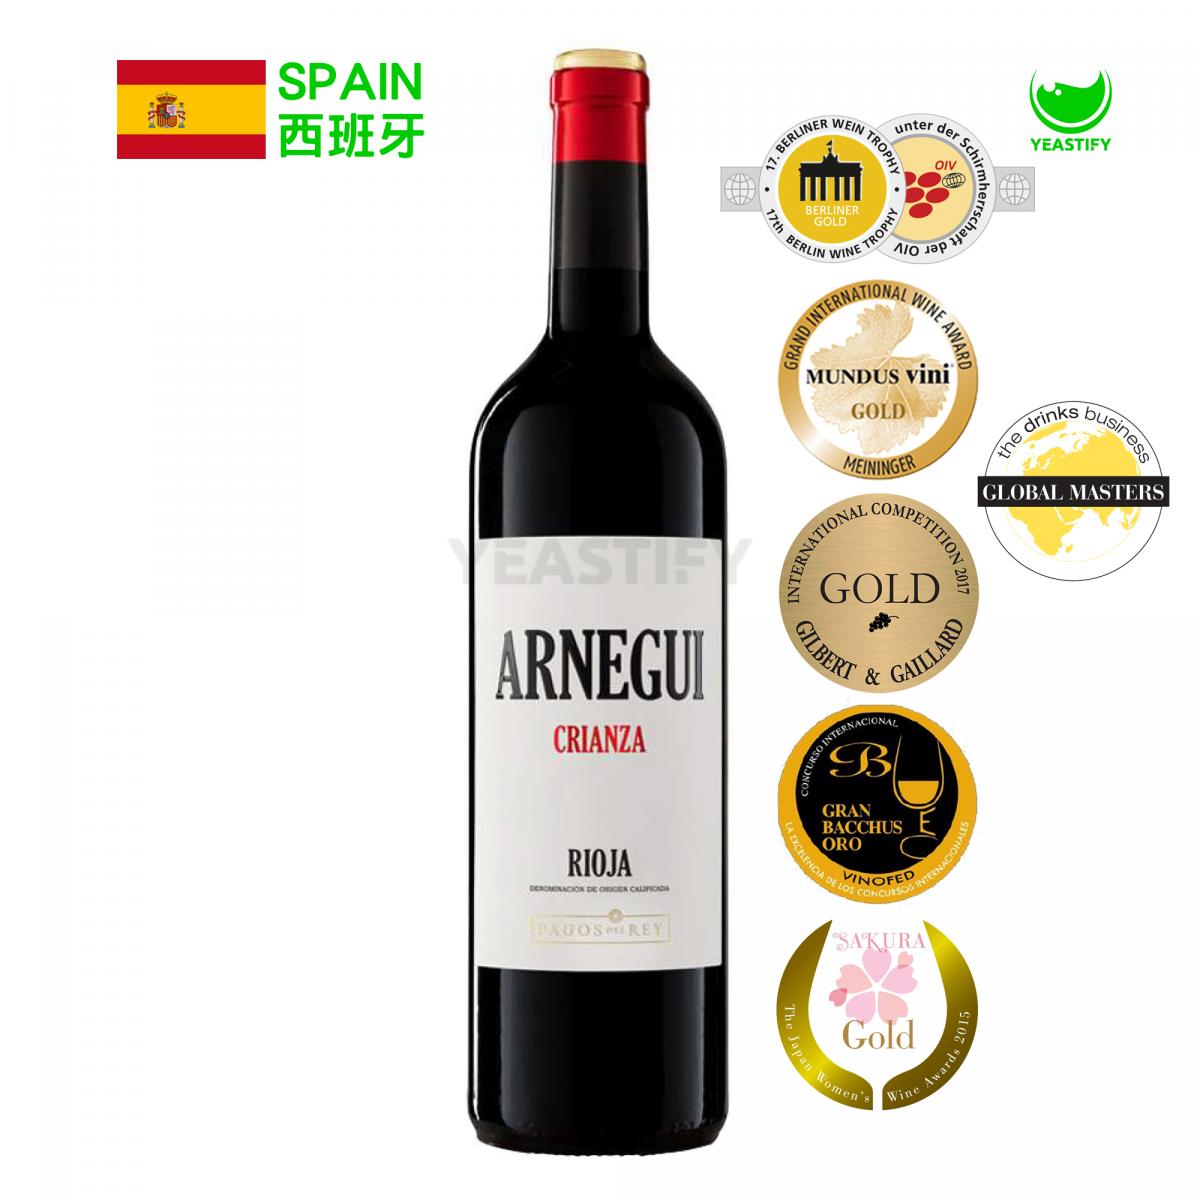 Crianza Spain Rioja Red Wine 2019